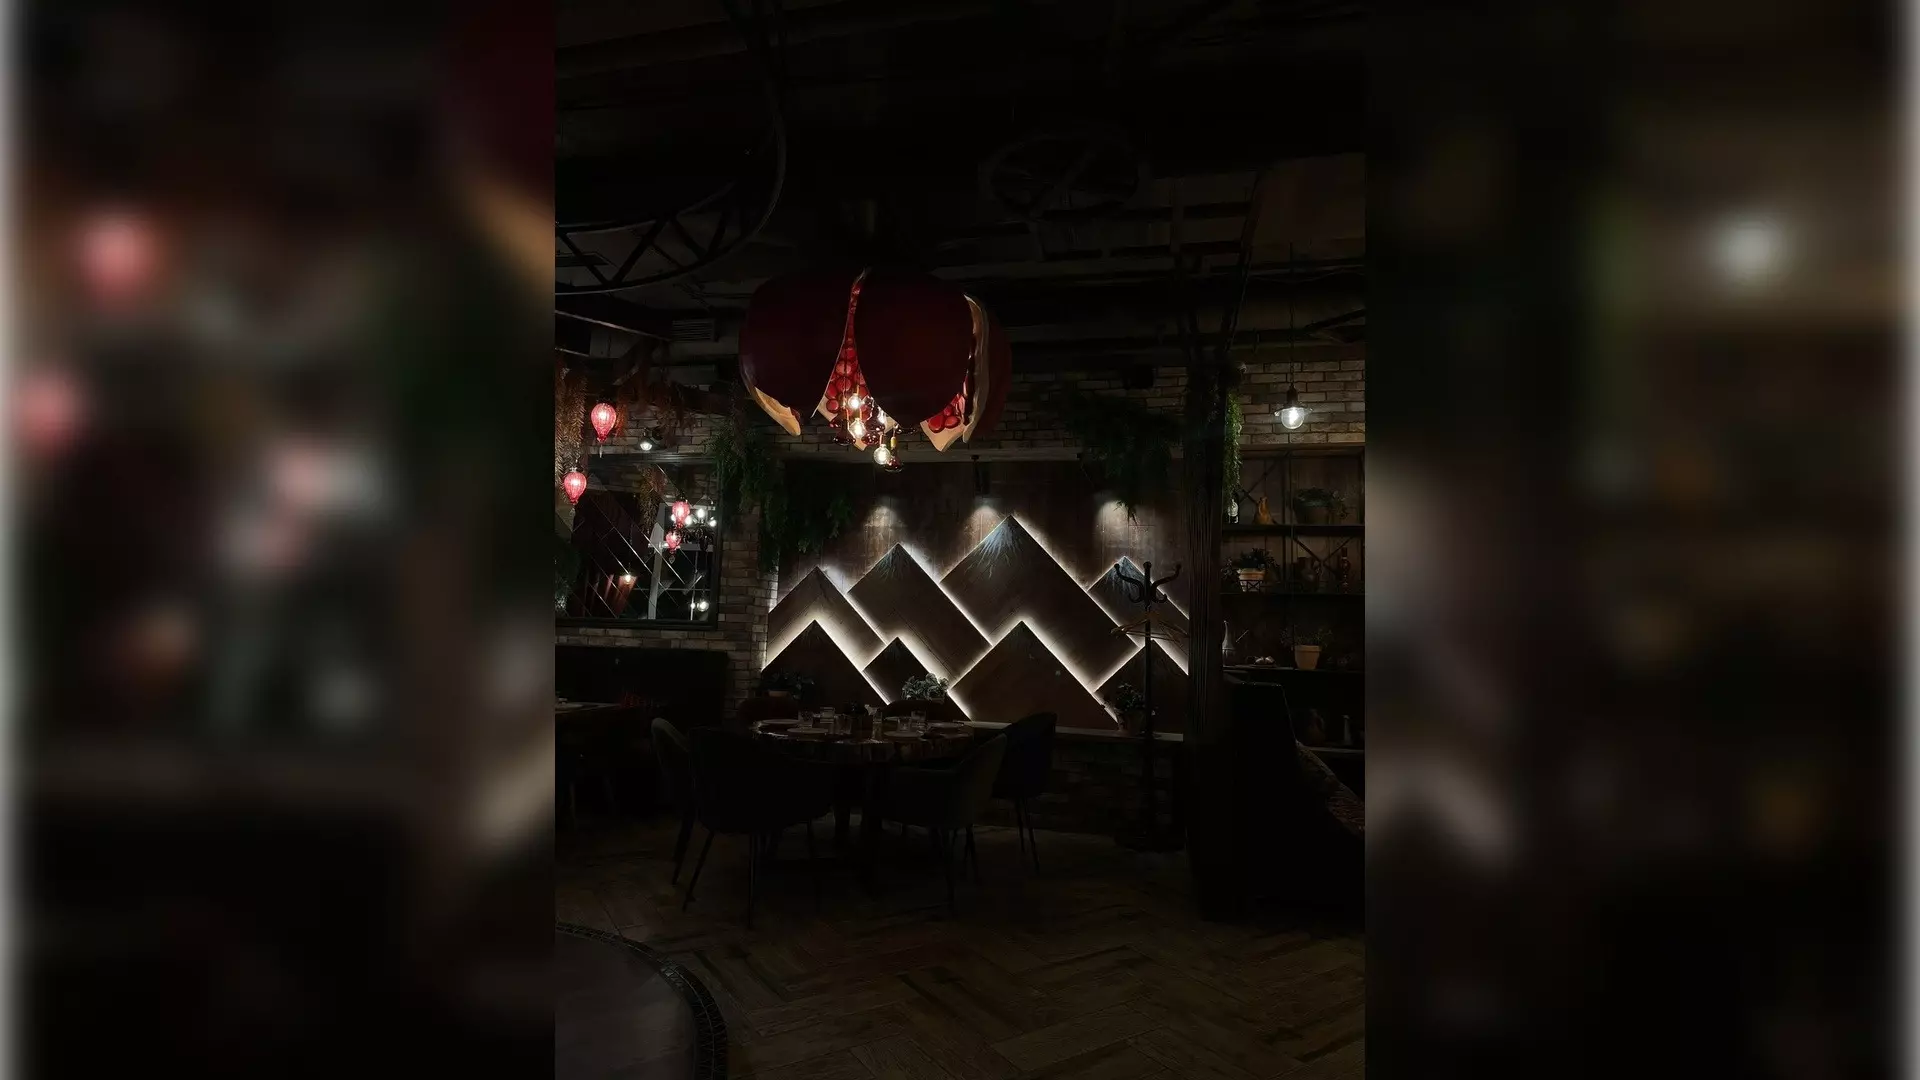 Ресторан "Съели сумели" в Оренбурге